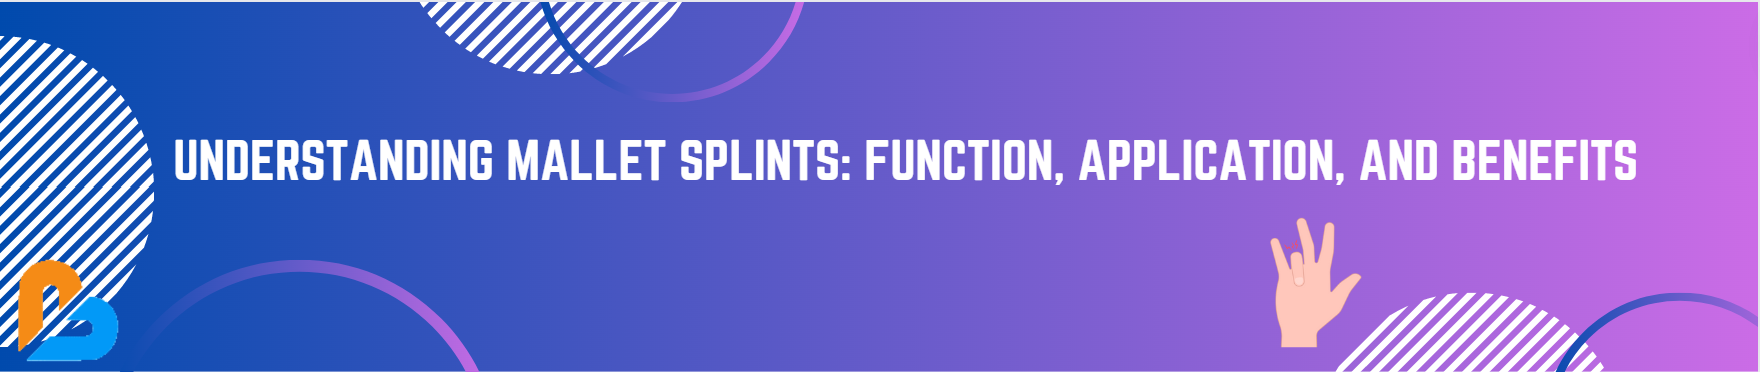 Understanding Mallet Splints: Function, Application, and Benefits